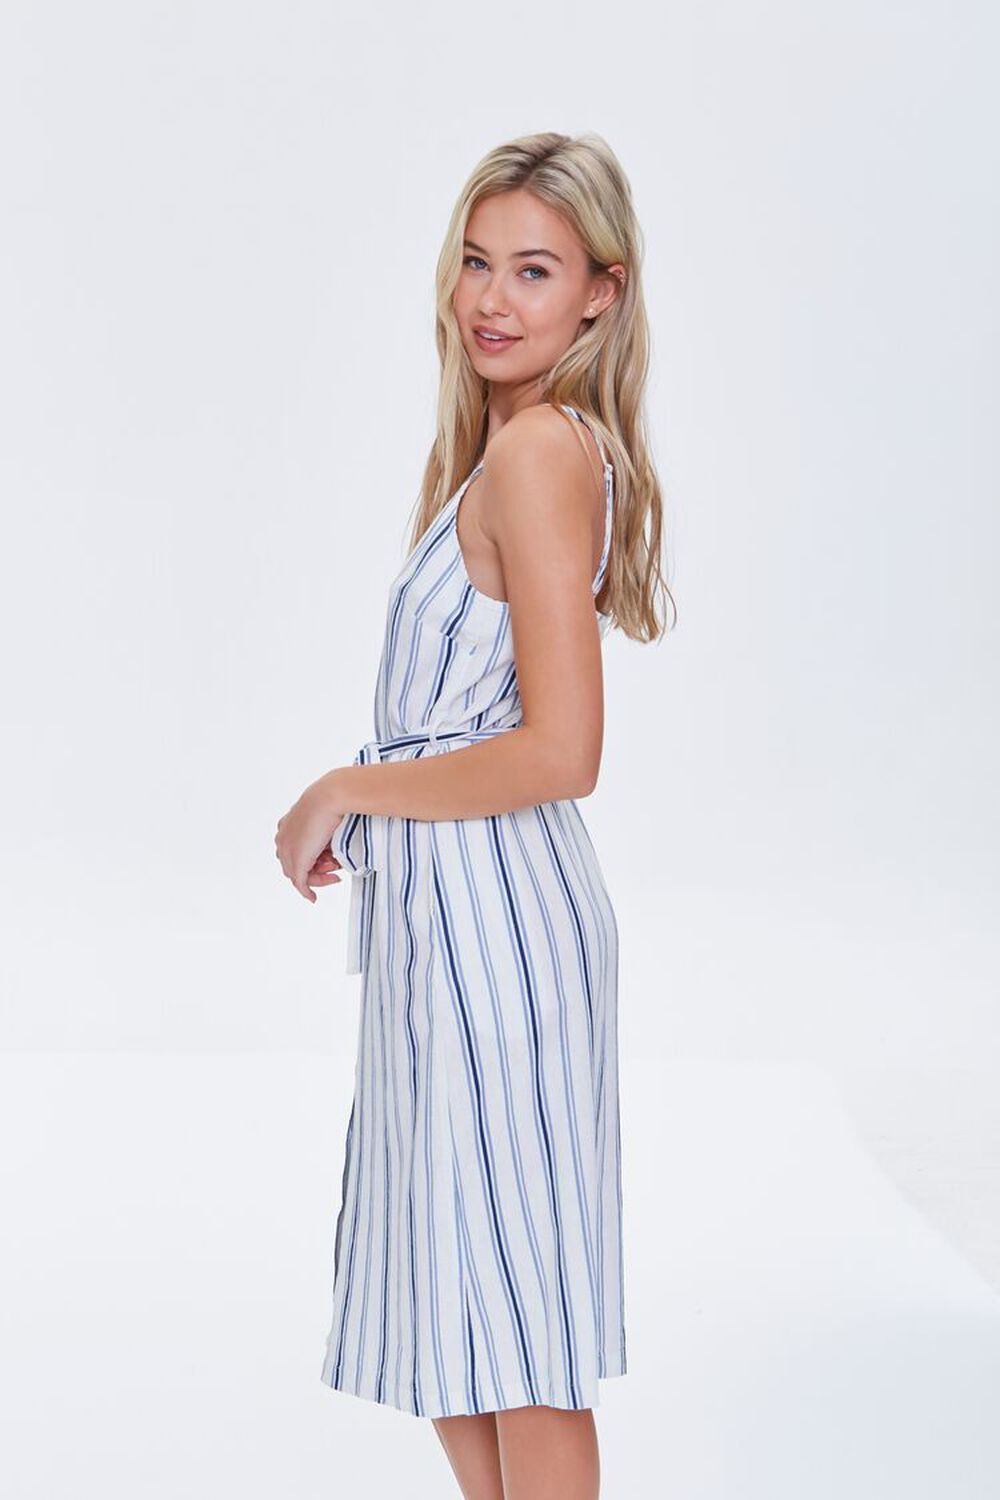 CREAM/BLUE Striped Linen-Blend Dress, image 3